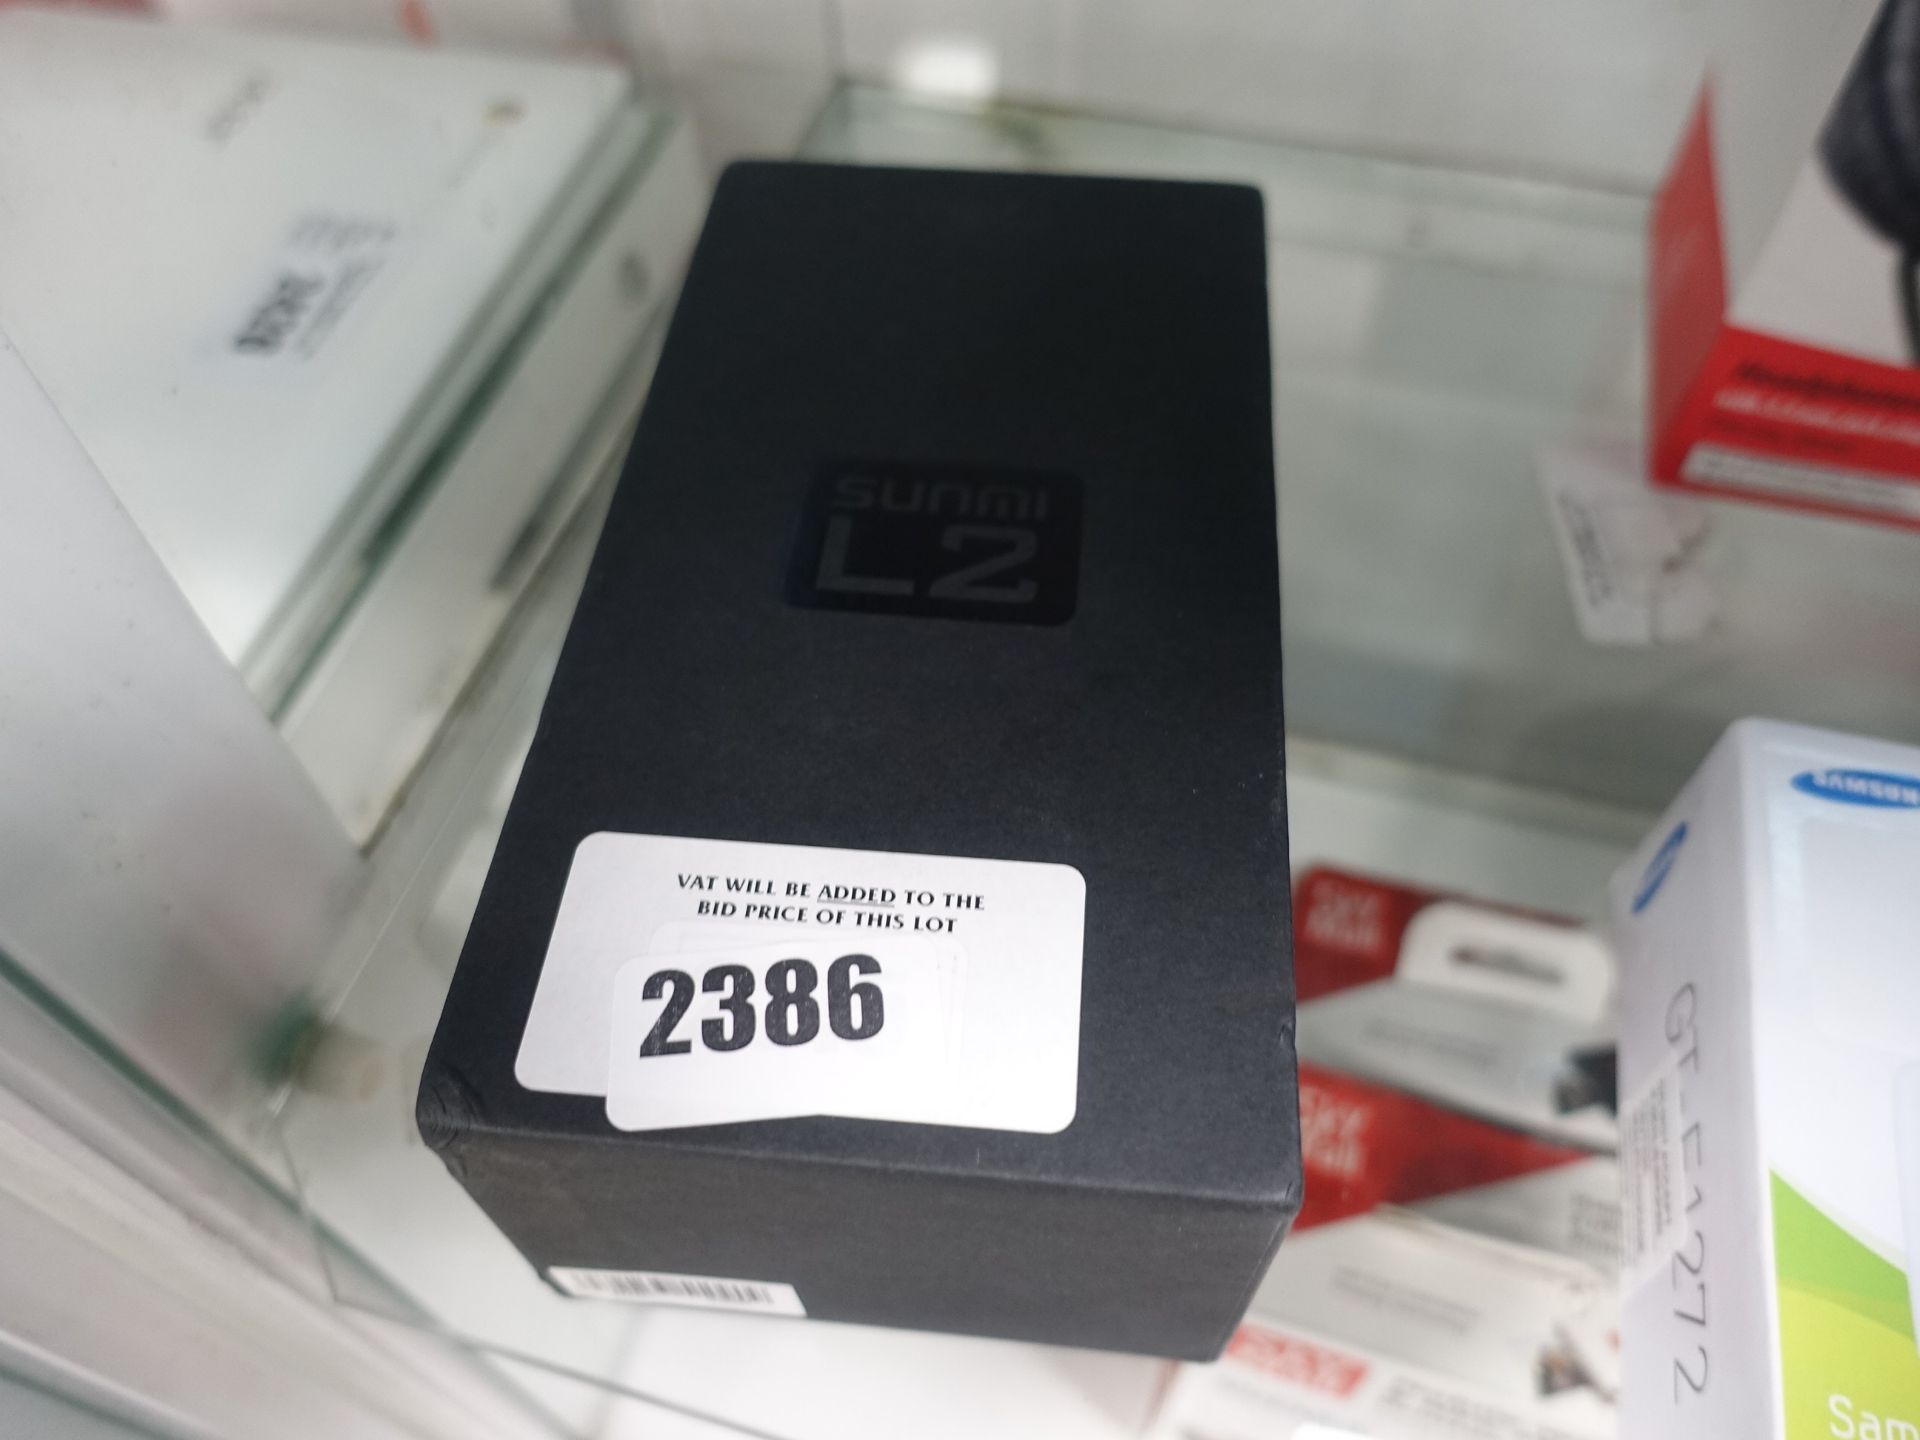 WD 2215 - Sunmi L2 mobile phone in box